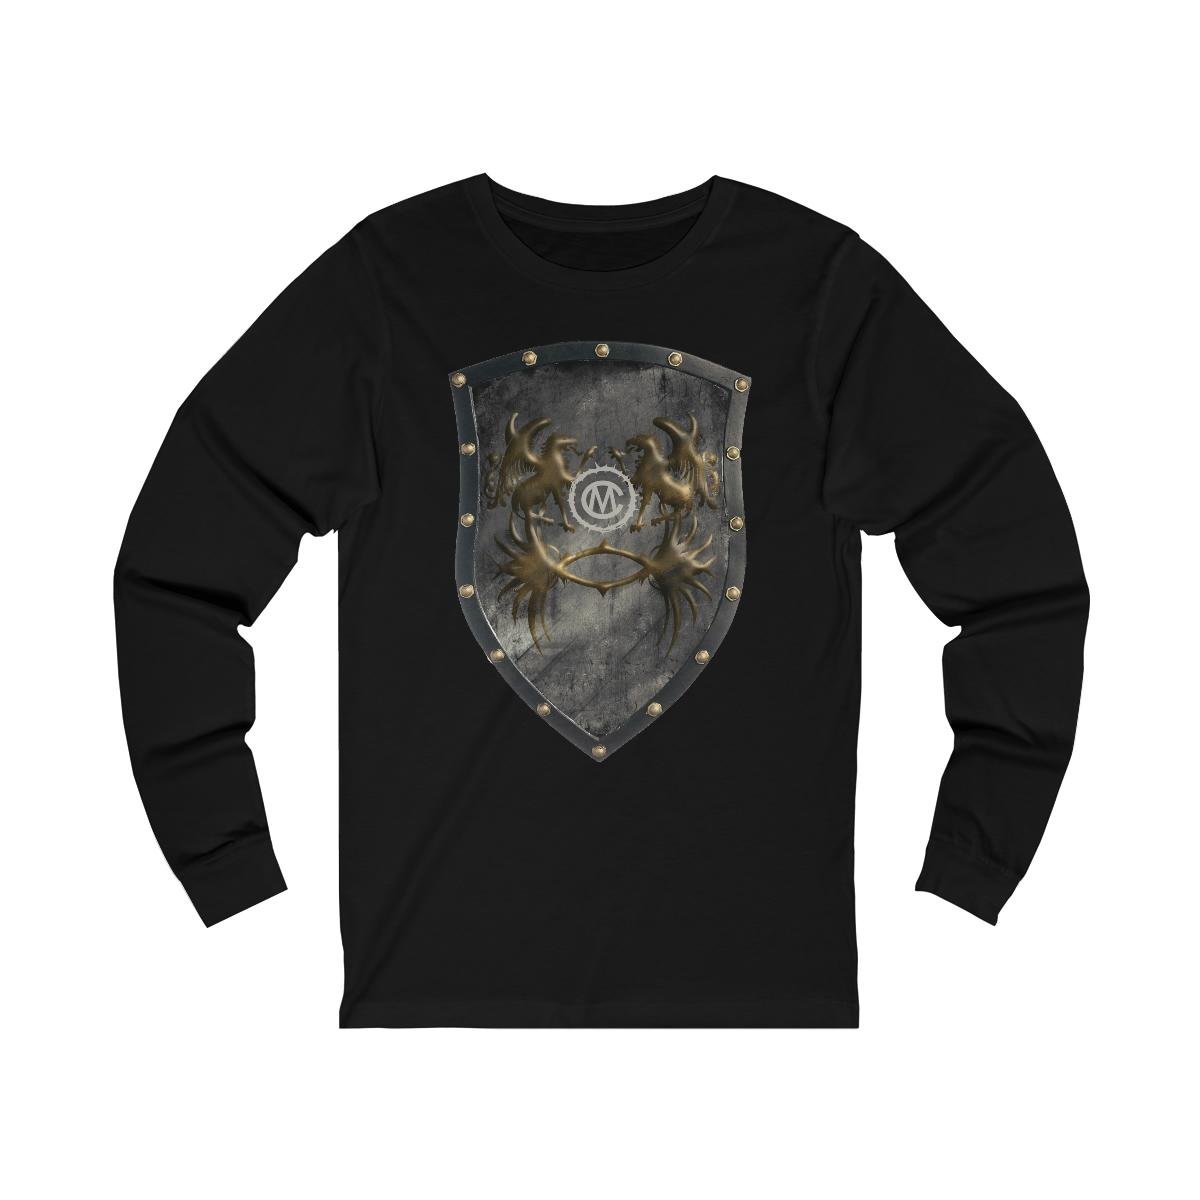 Mawcore – Grey Shield Long Sleeve Tshirt